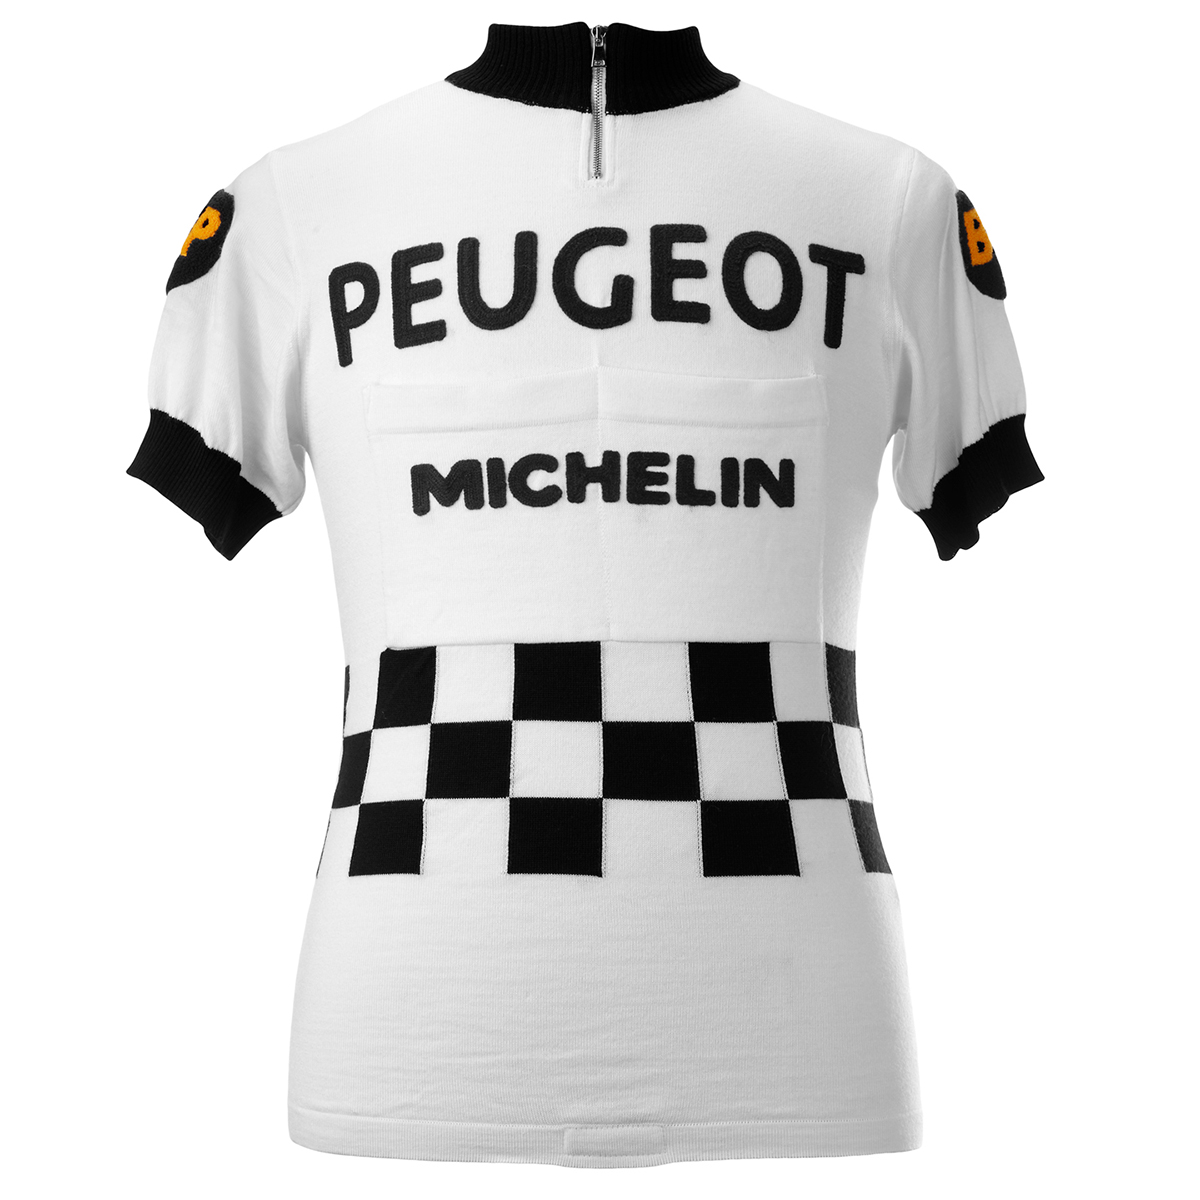 Vintage Team PEUGEOT Michelin rétro maillot de cyclisme